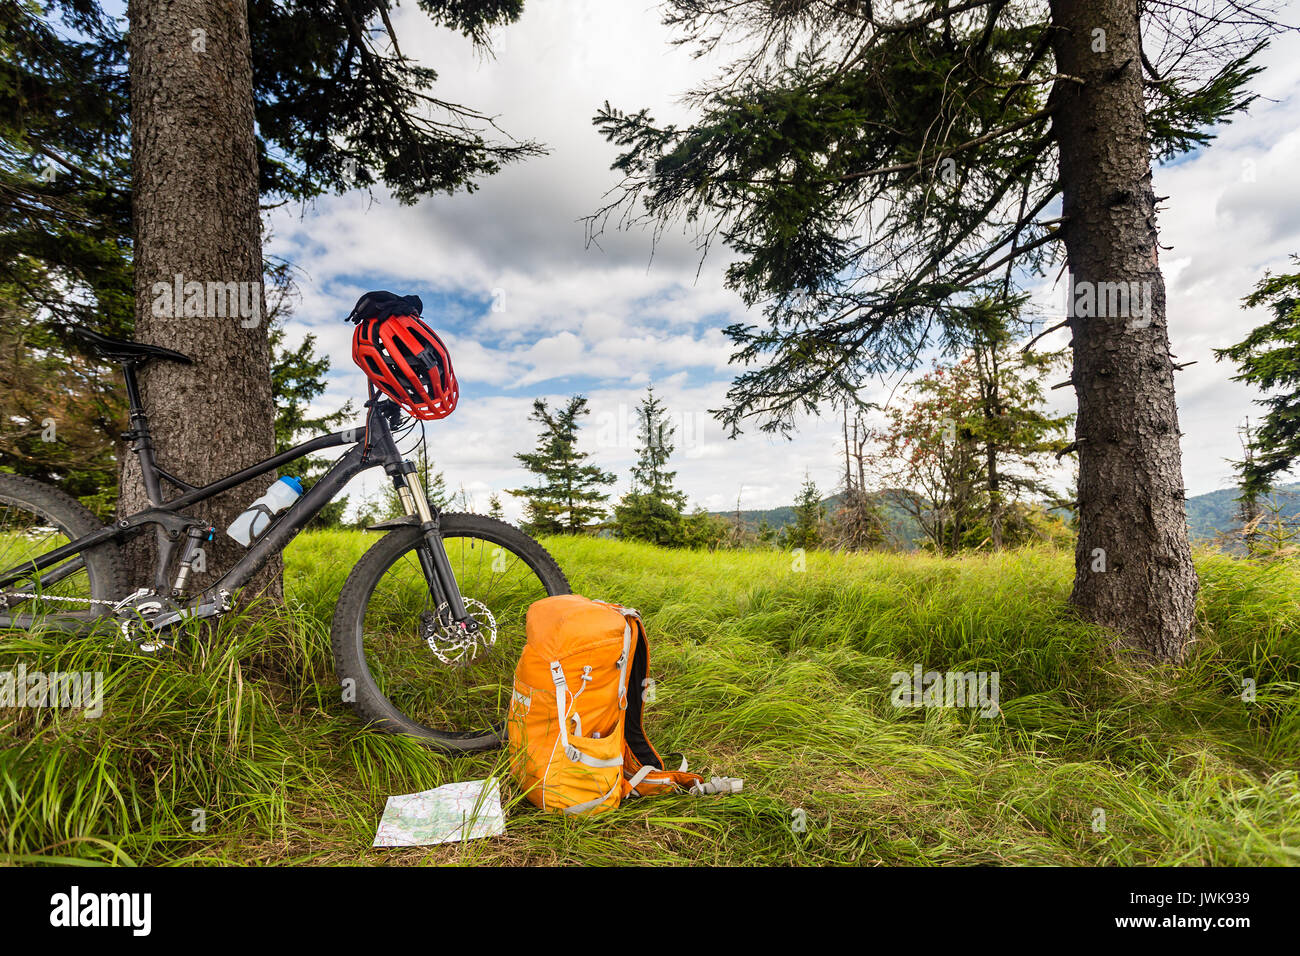 Mountain Bike in den Wald, bikepacking Abenteuer Reise in die grünen Berge.  Reisen Campingplatz und MTB Fahrrad mit Rucksack, Wüste Fores  Stockfotografie - Alamy